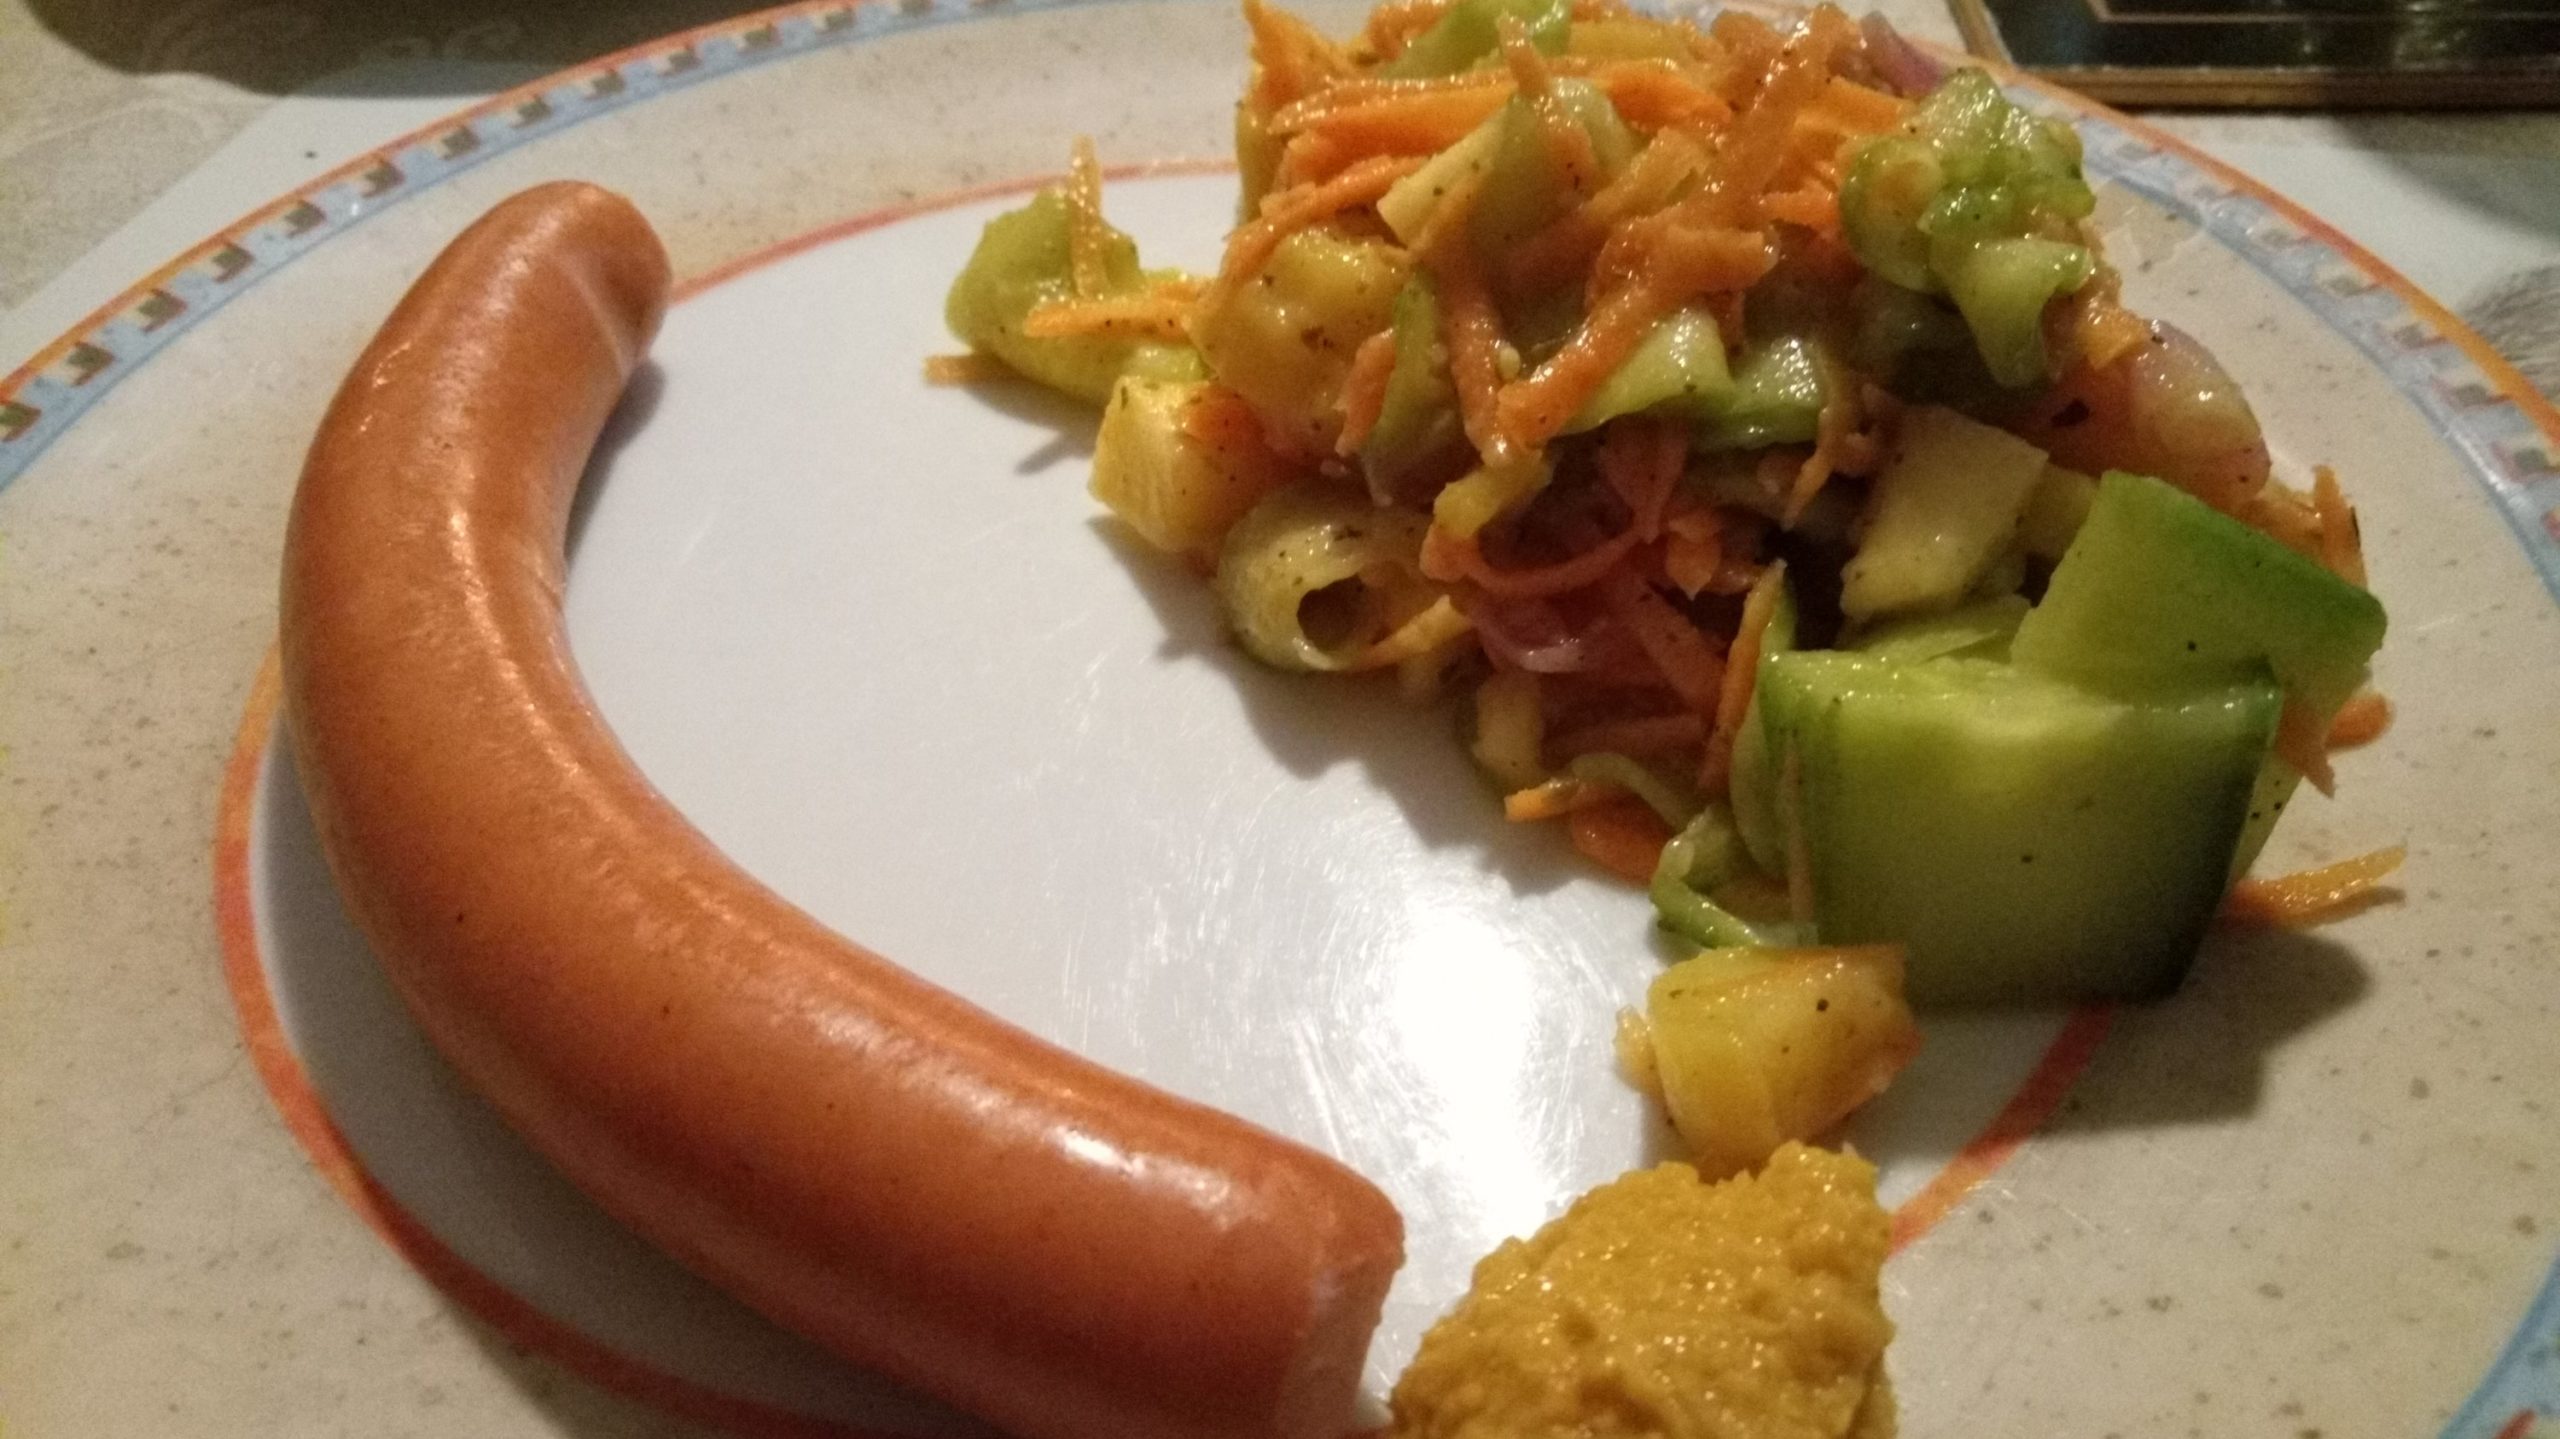 Bunter Kartoffelsalat mit Wiener Würstchen | Essen Tagebuch mit Bild ...